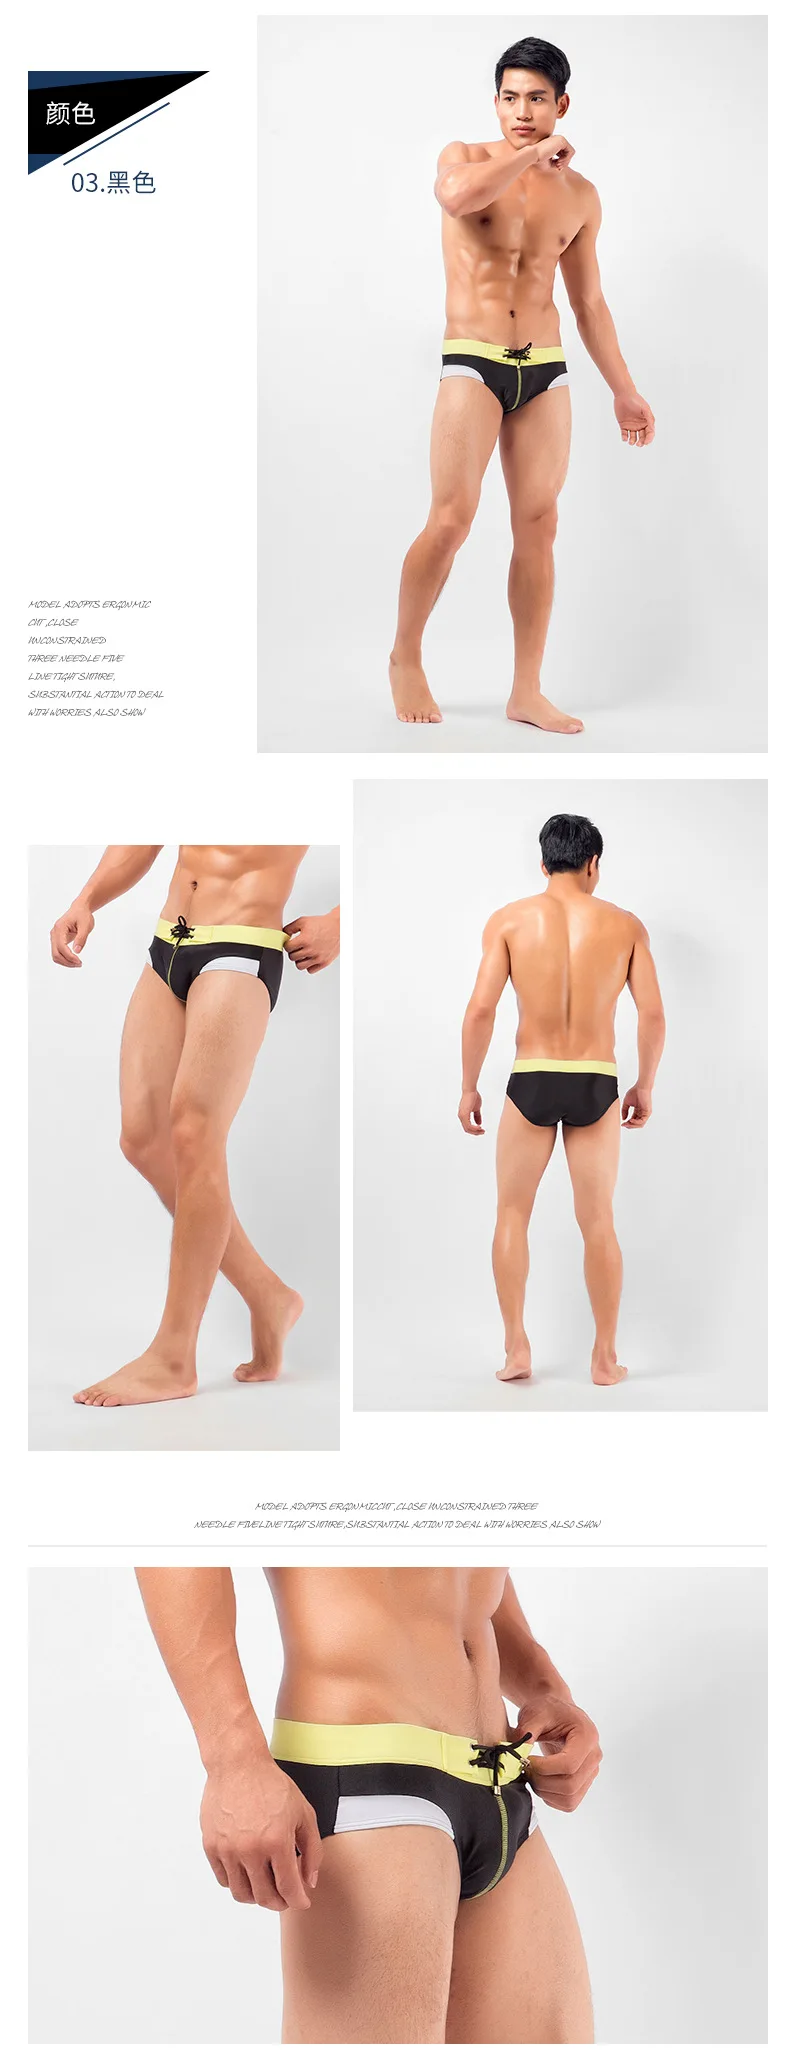 WONSHCORA, Брендовые мужские сексуальные плавки, новые плавательные трусы, тонкие плавки, мужские плавки с заплатками, яркие цвета, подходящий дизайн